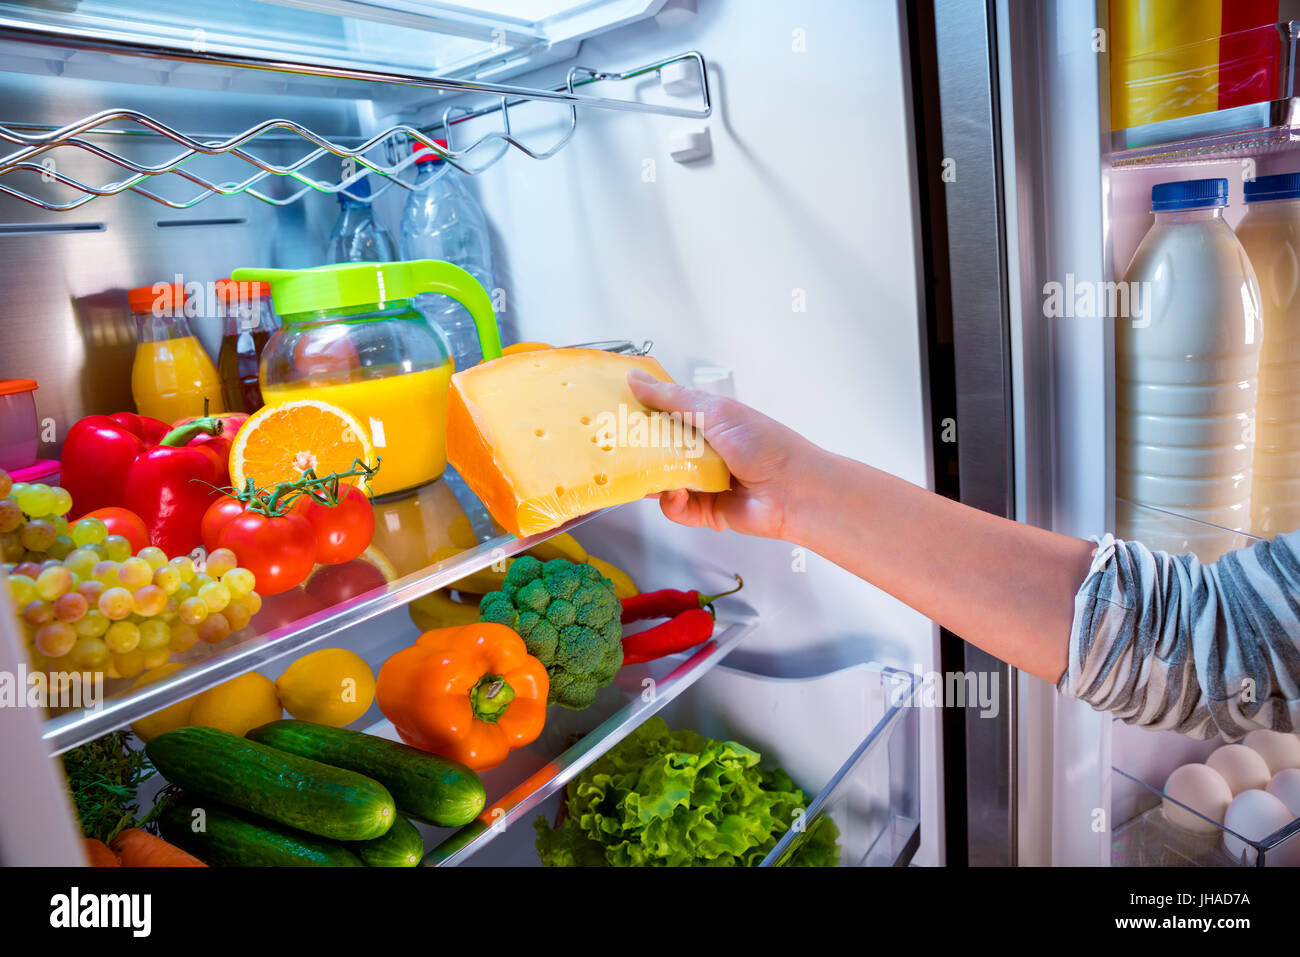 Как сохранить сыр в холодильник свежим